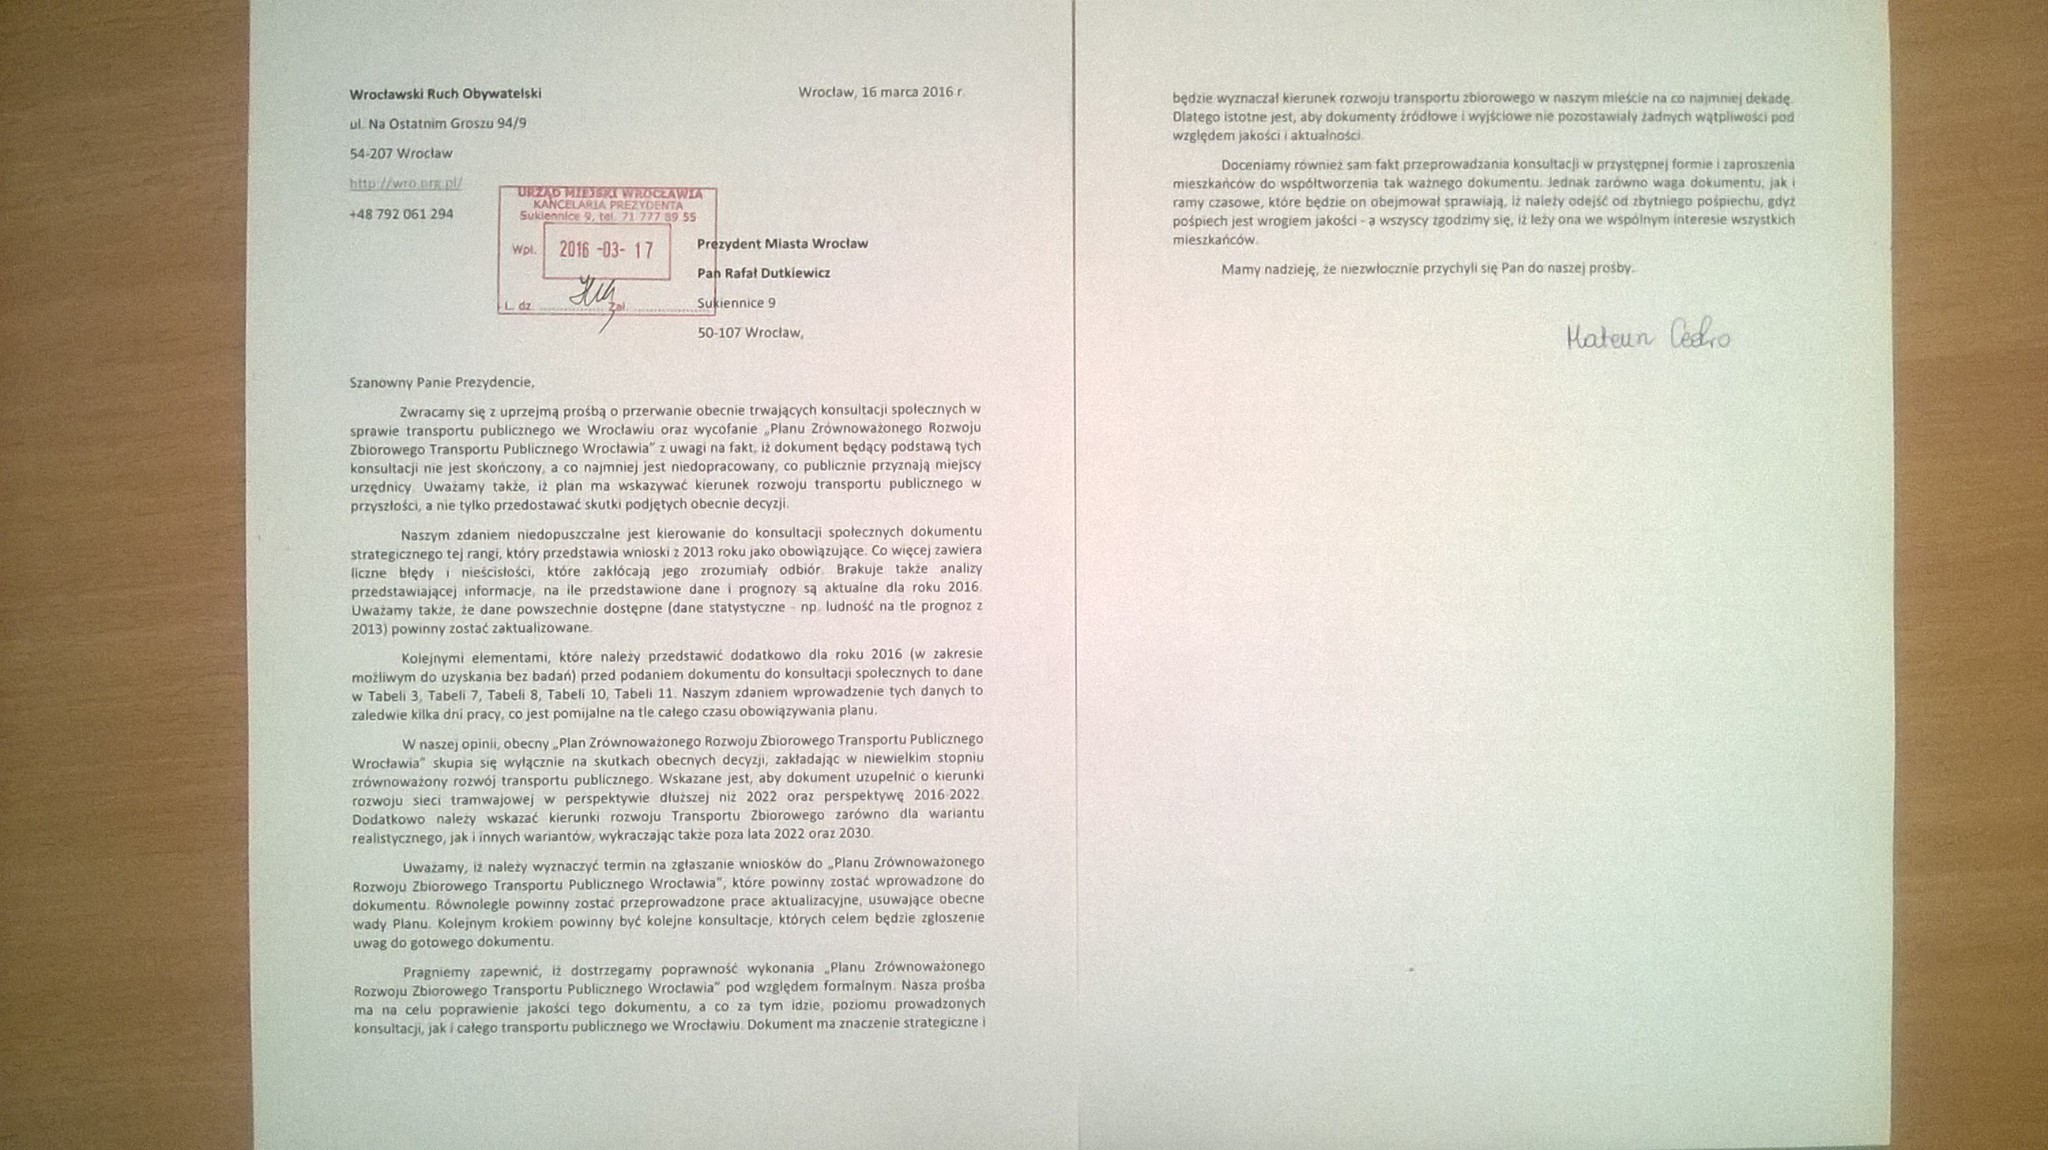 Apelują do Dutkiewicza o przerwanie konsultacji w sprawie planu transportowego. „Dokument zawiera rażące błędy”, mat. prasowe